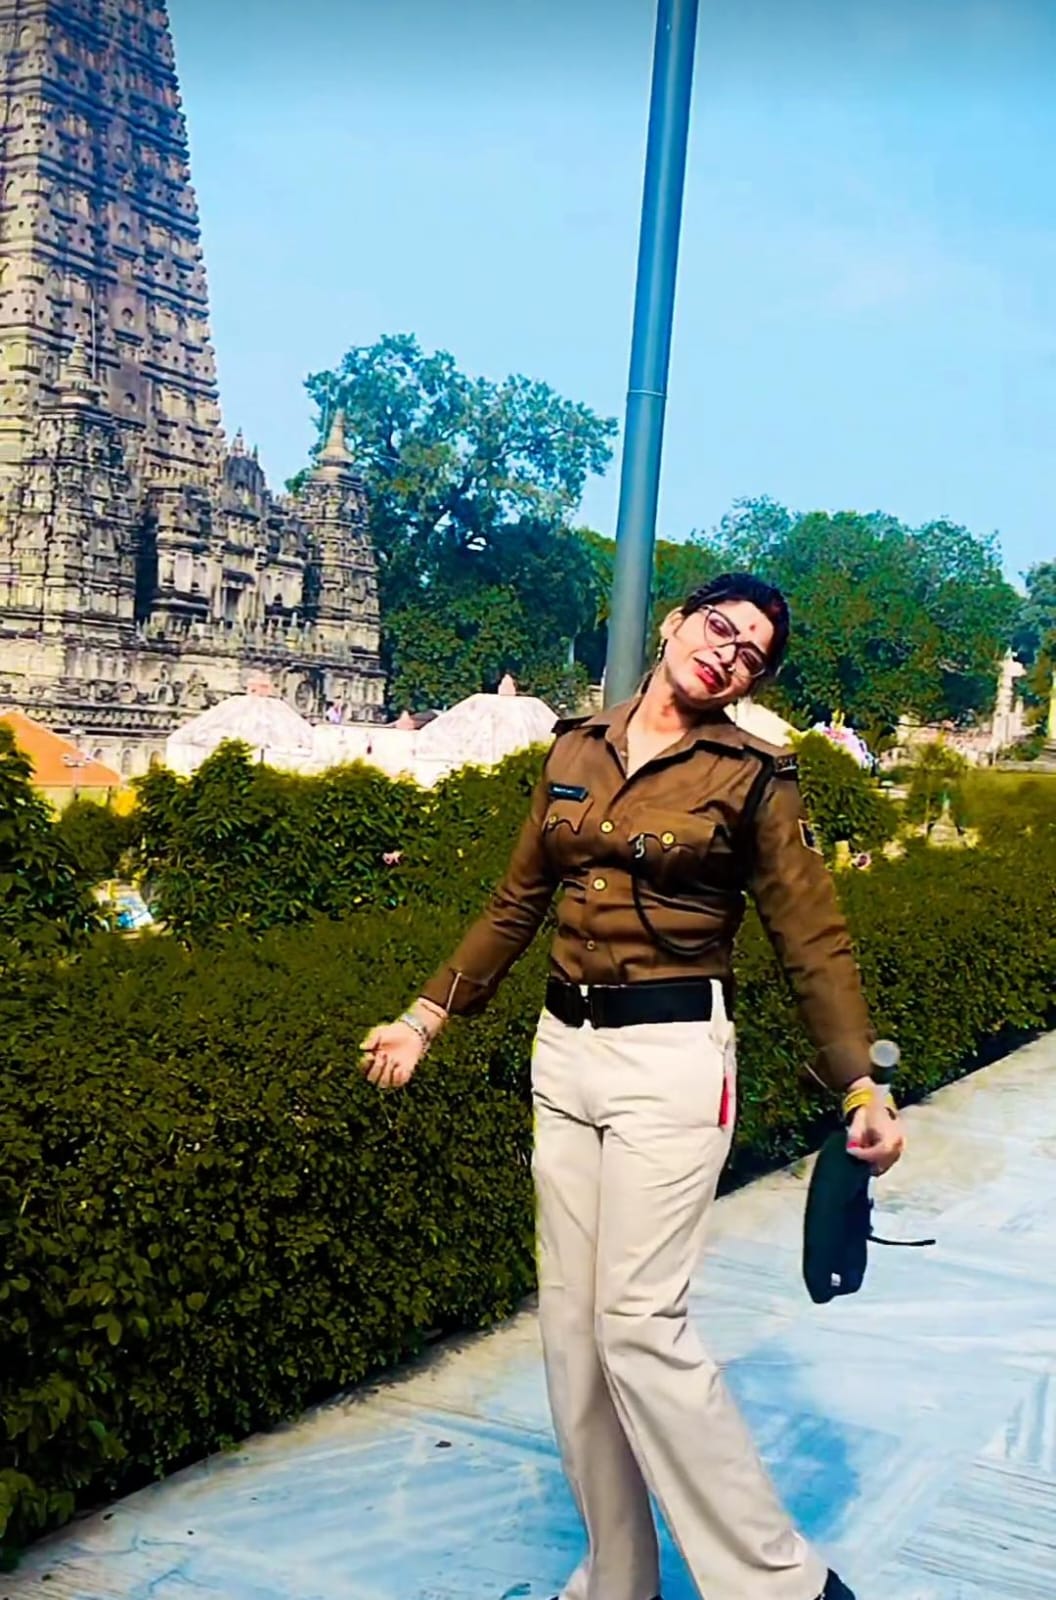 महाबोधि मंदिर परिसर में वीडियो बनाती महिला पुलिसकर्मी